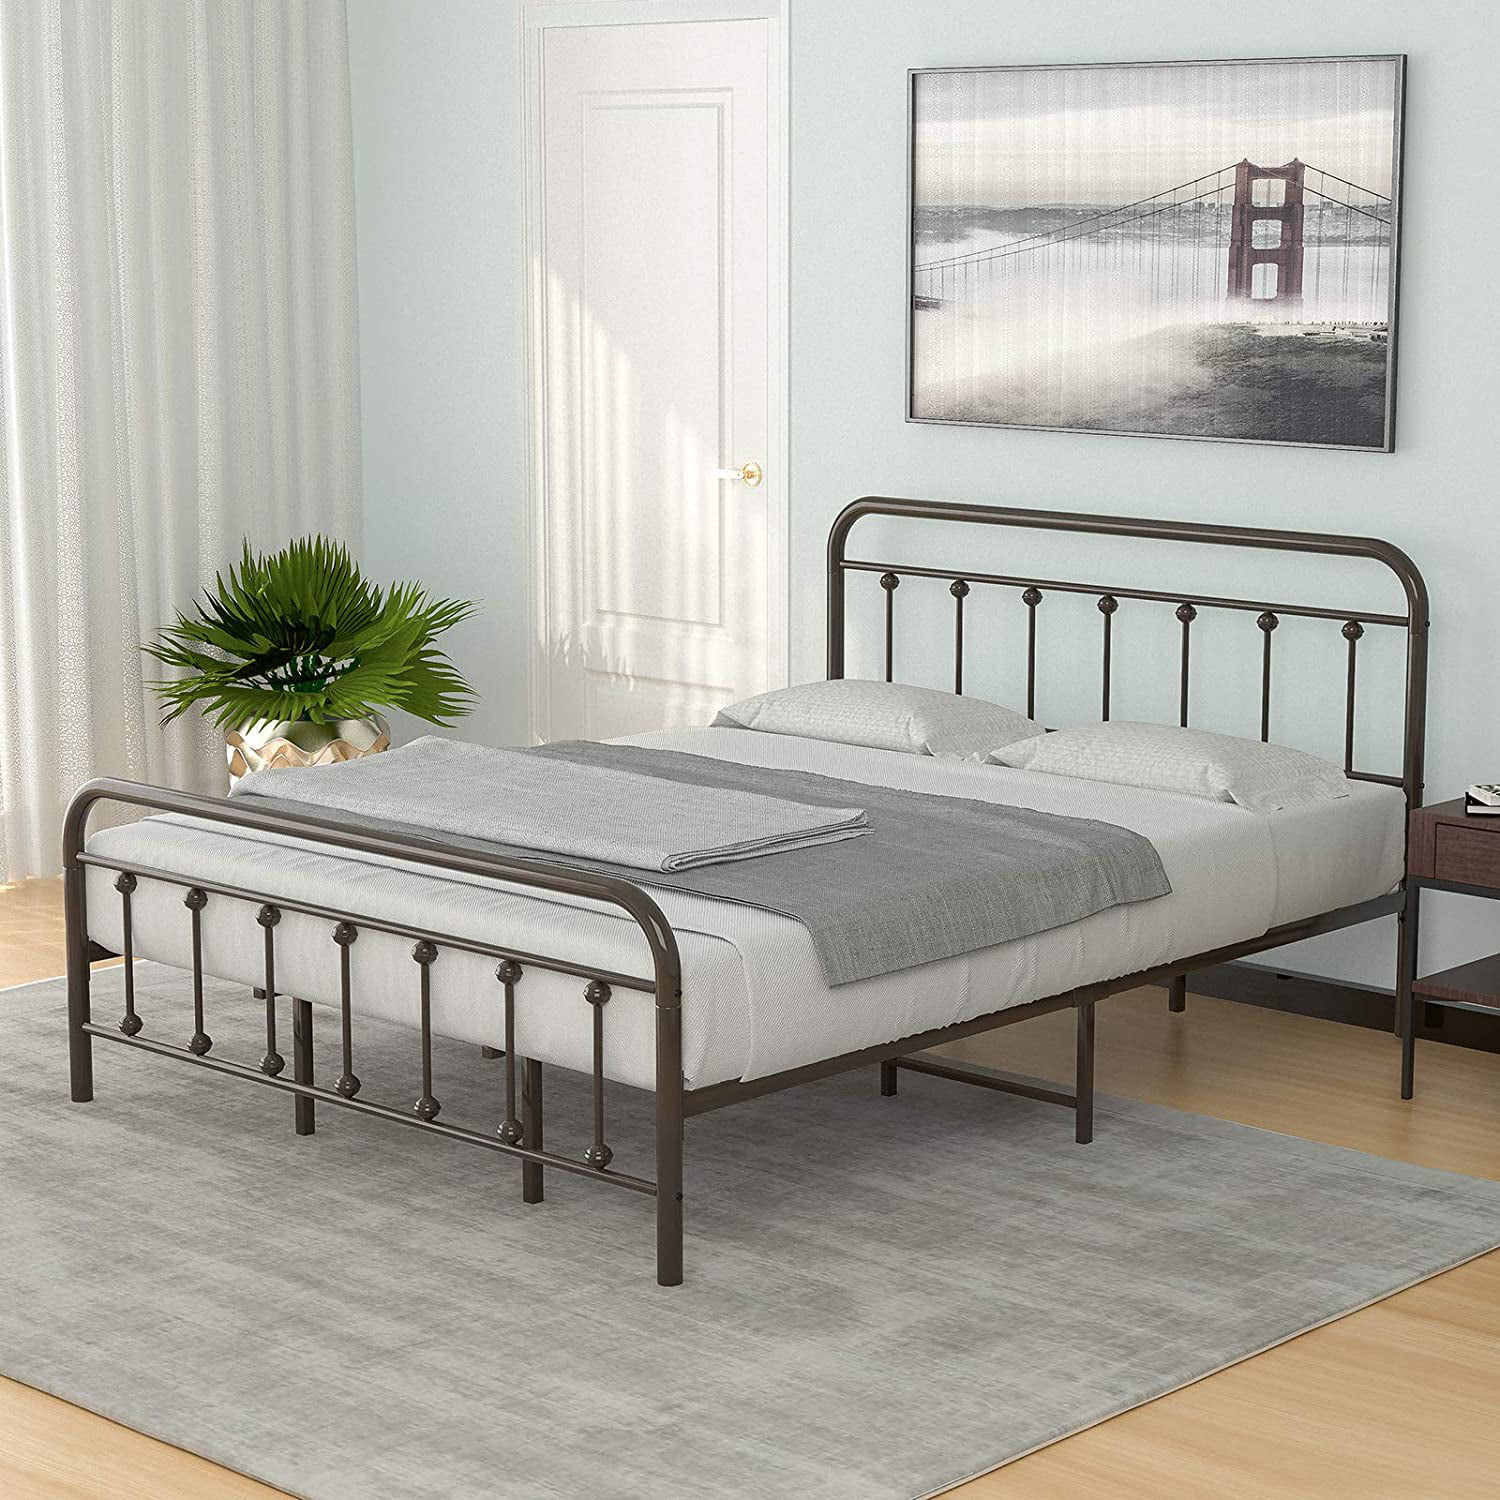 Mecor King Size Metal Platform Bed, King Size Metal Bed Rails